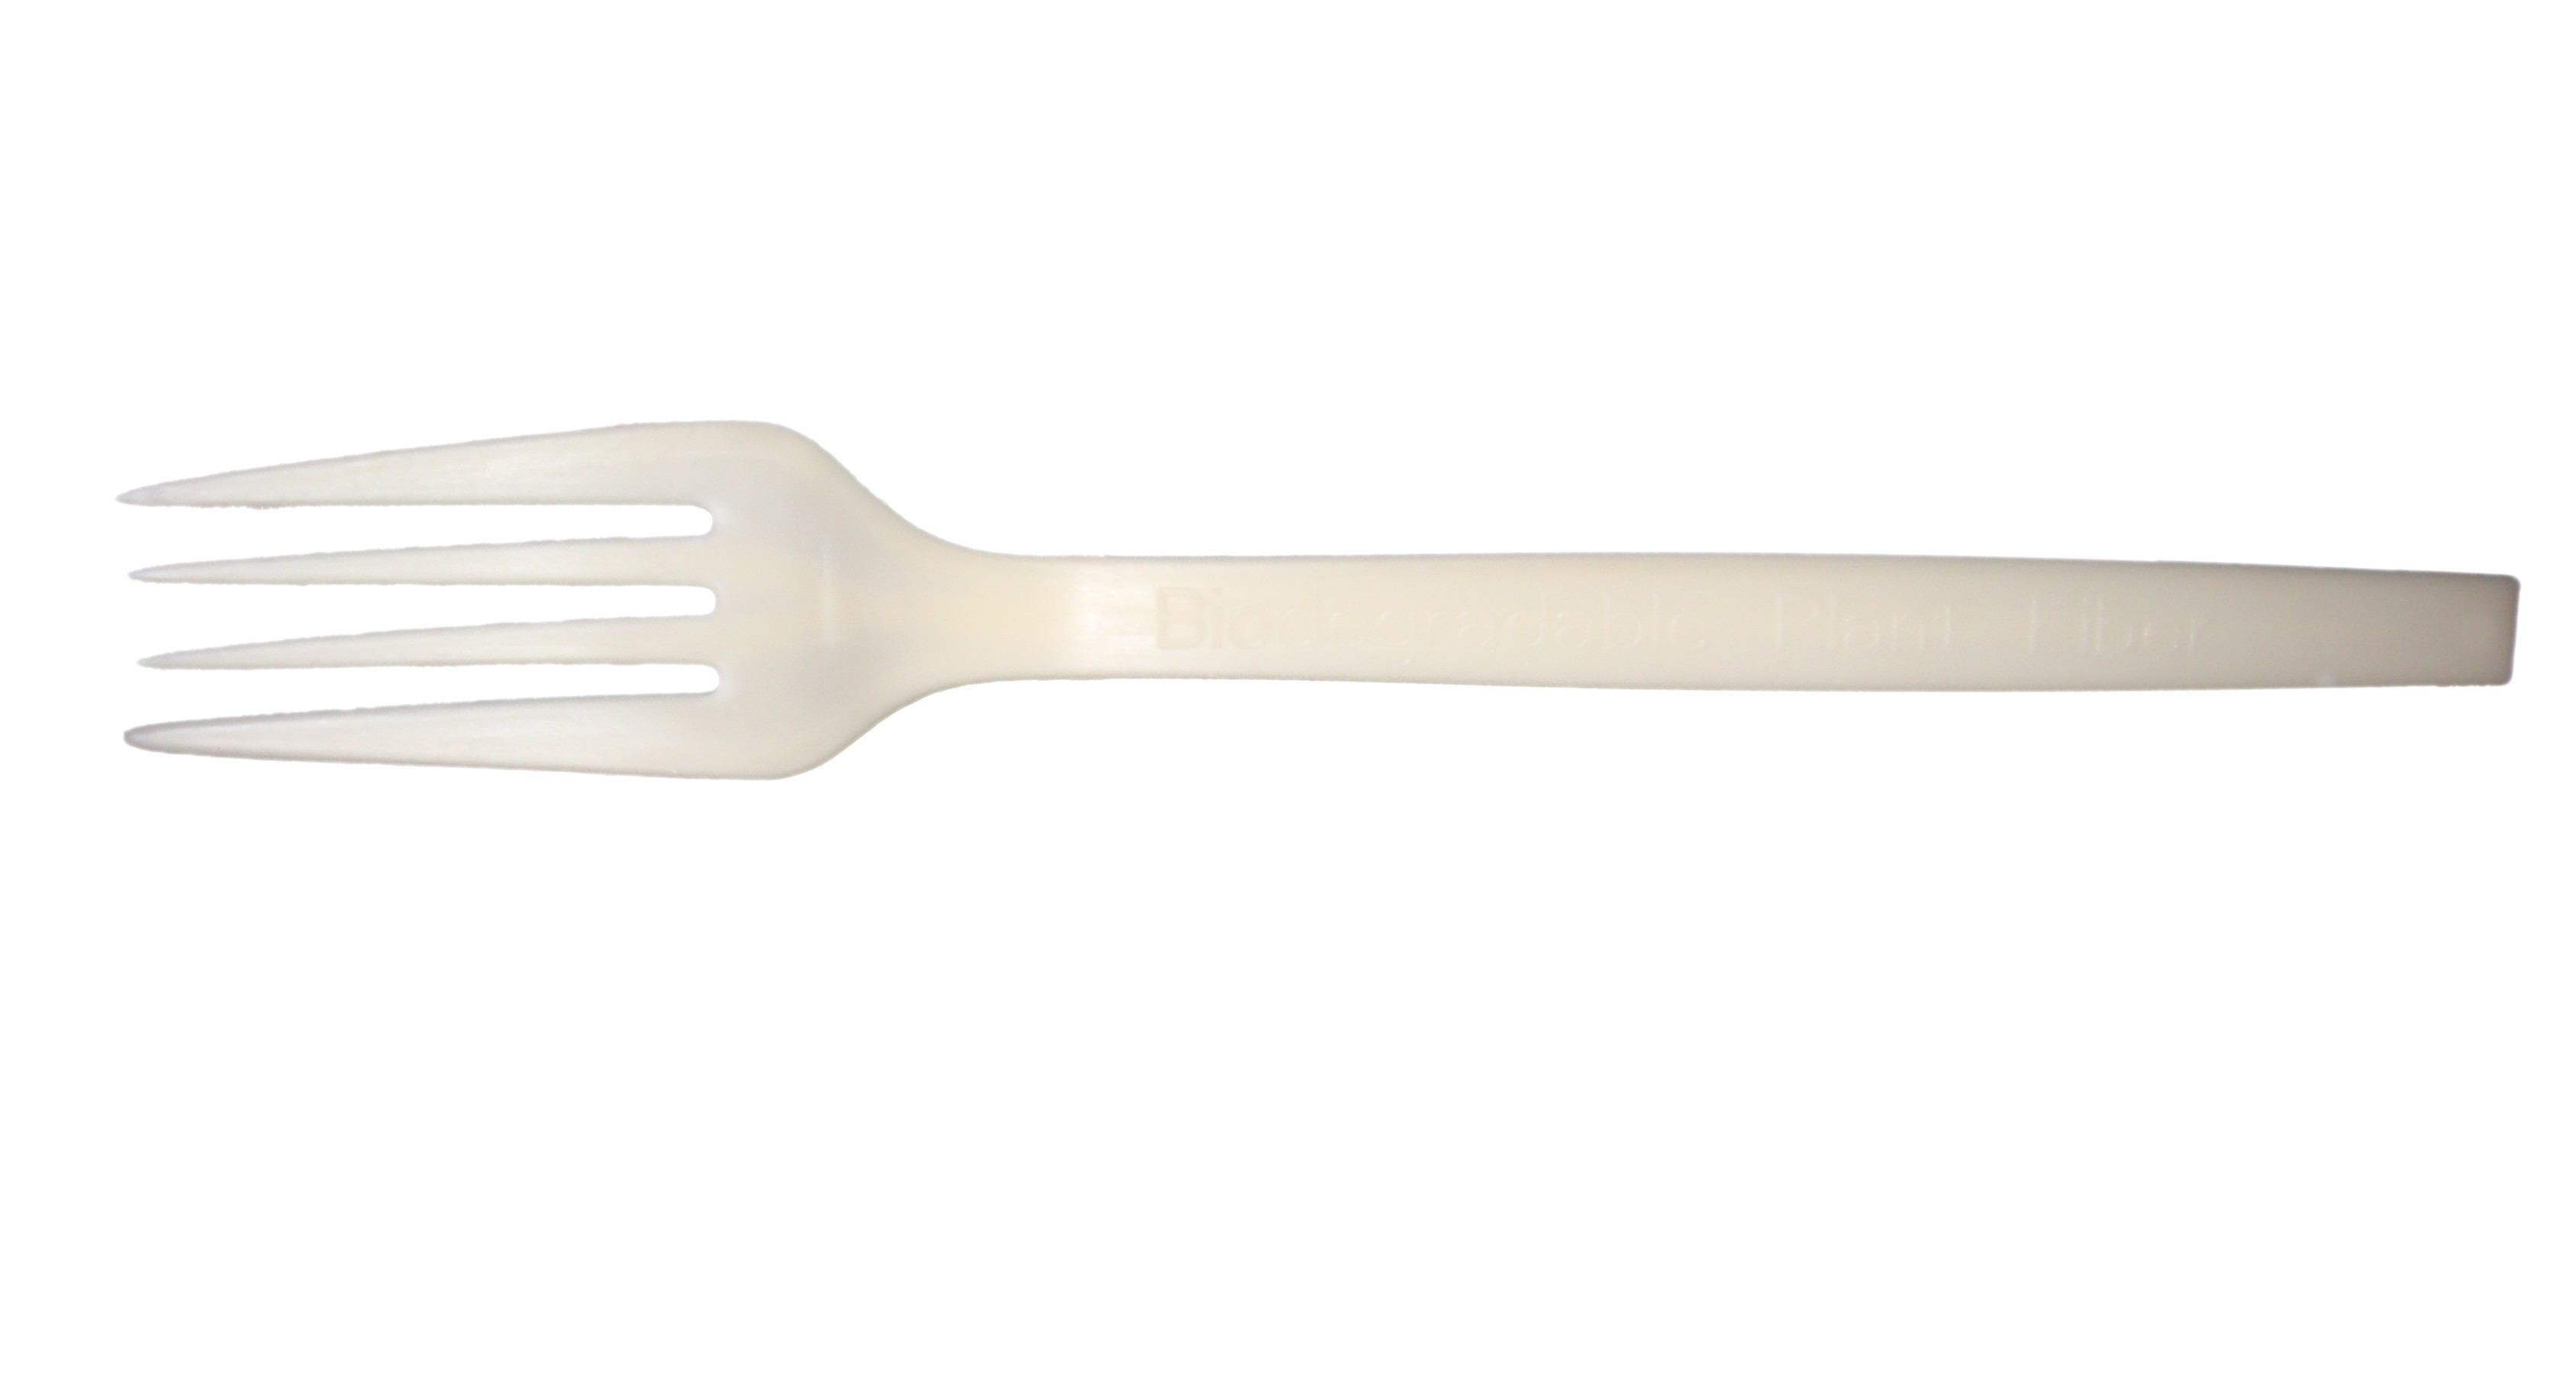 Forks 7" Plant Based Material White 20/50/CS